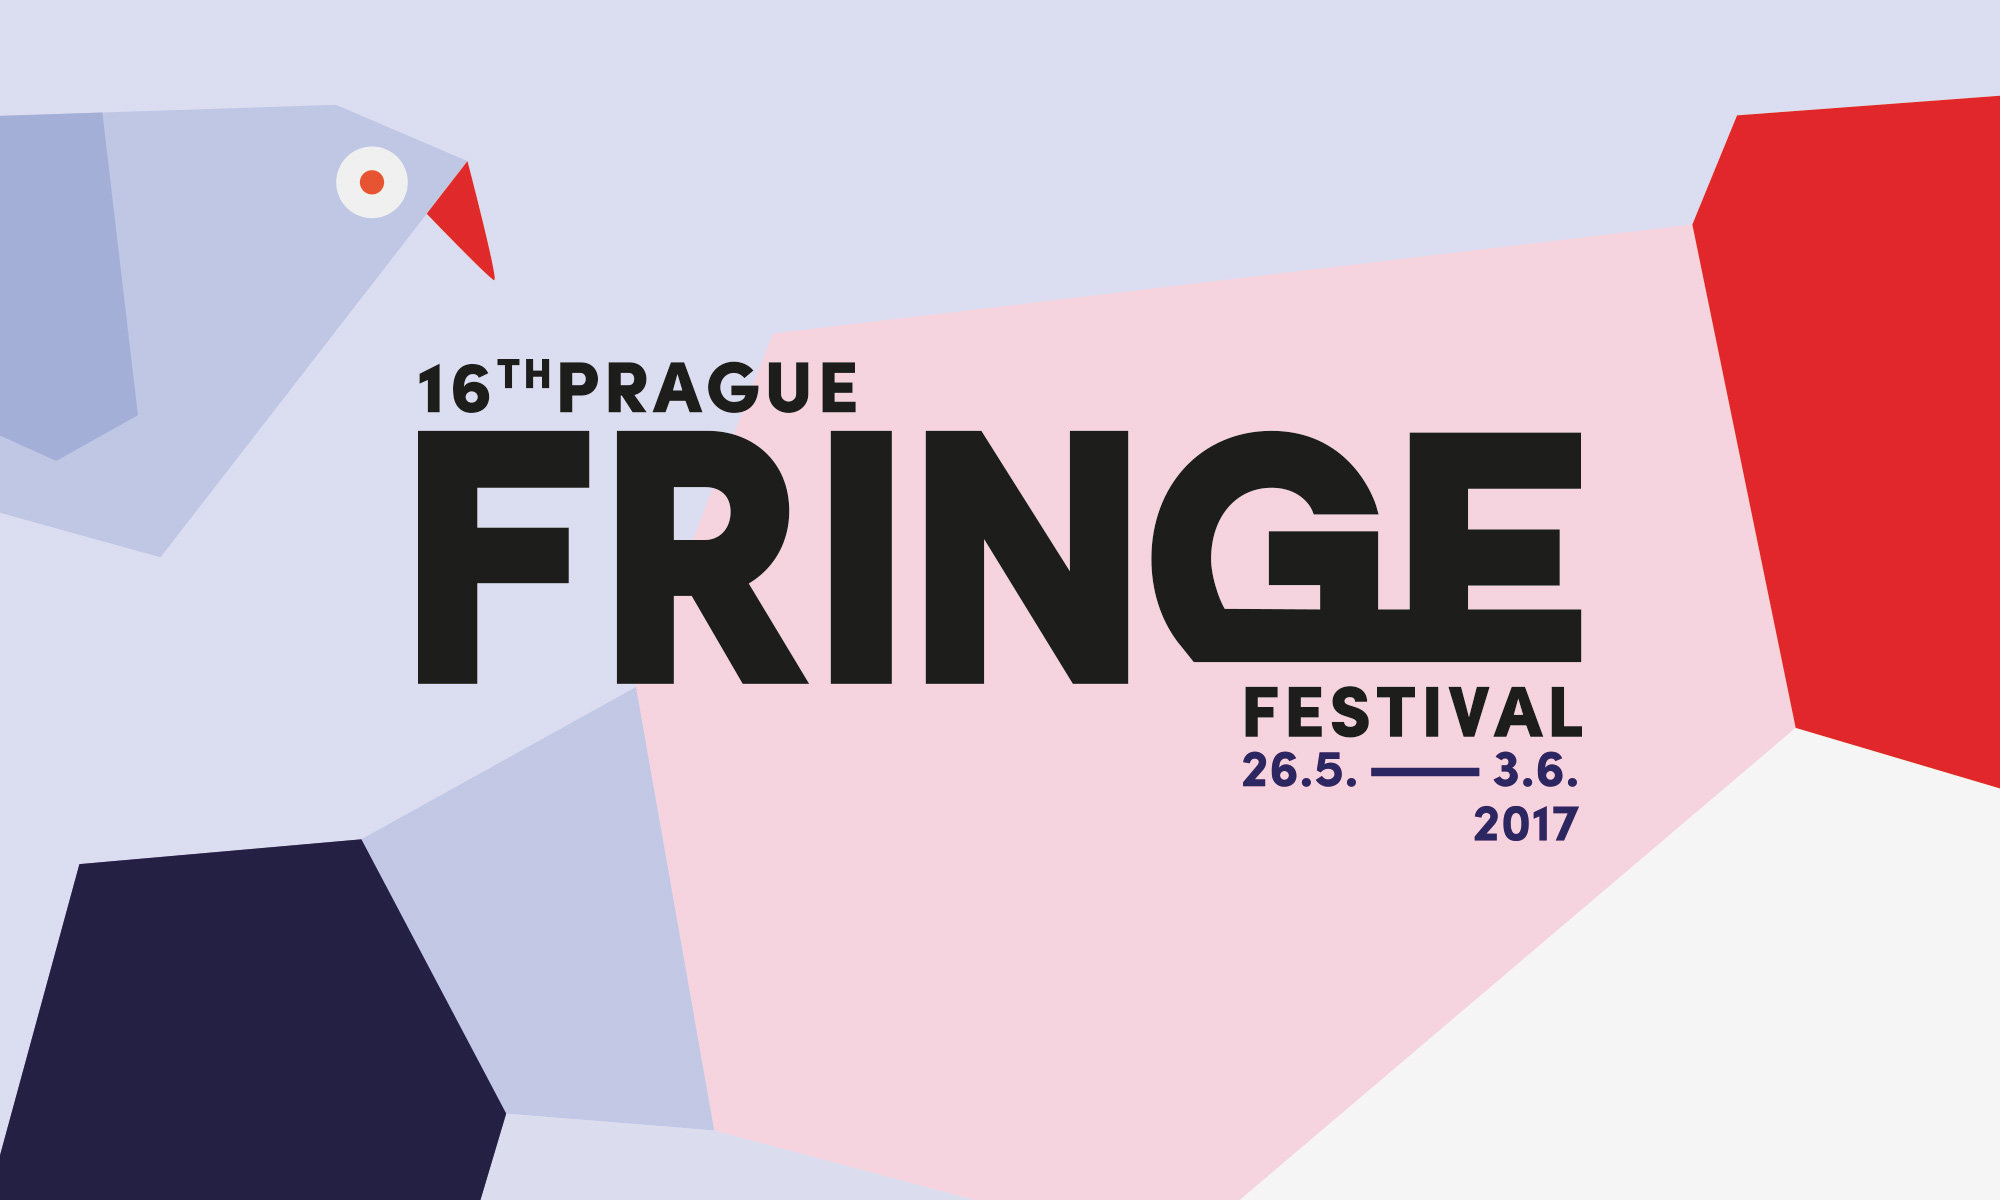 prague_fringe_festival_2017_1.jpg